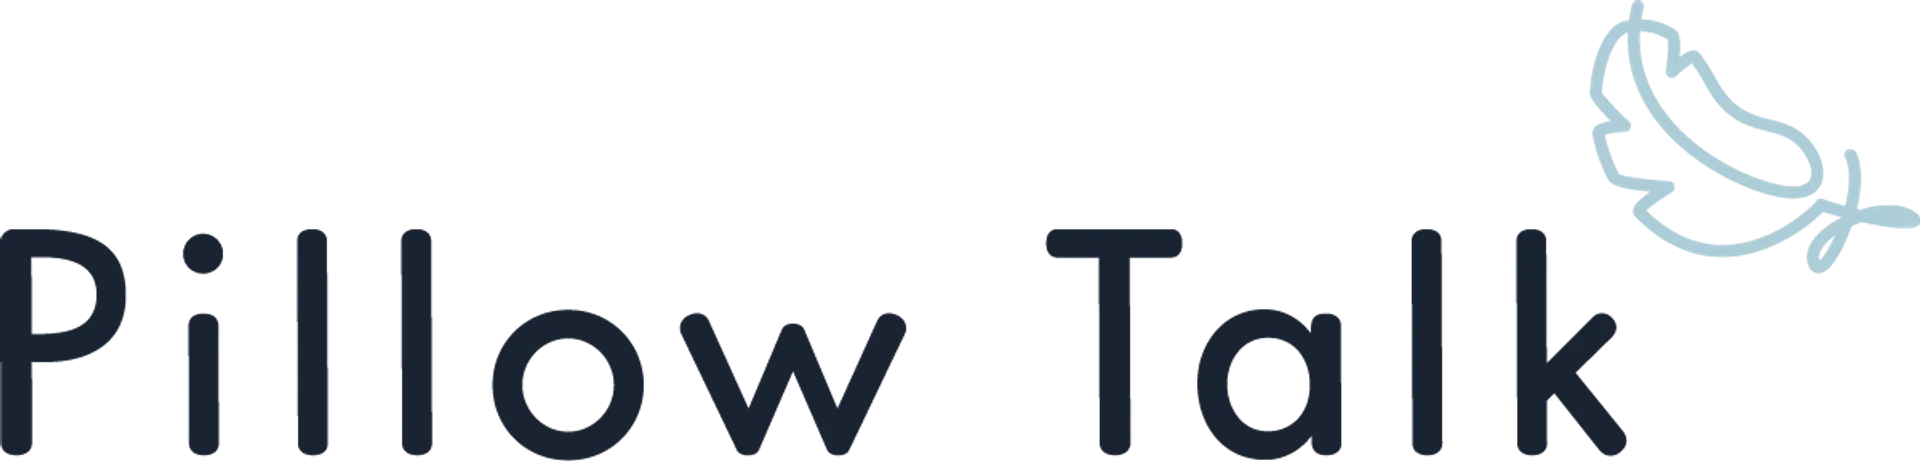 PILLOW TALK logo